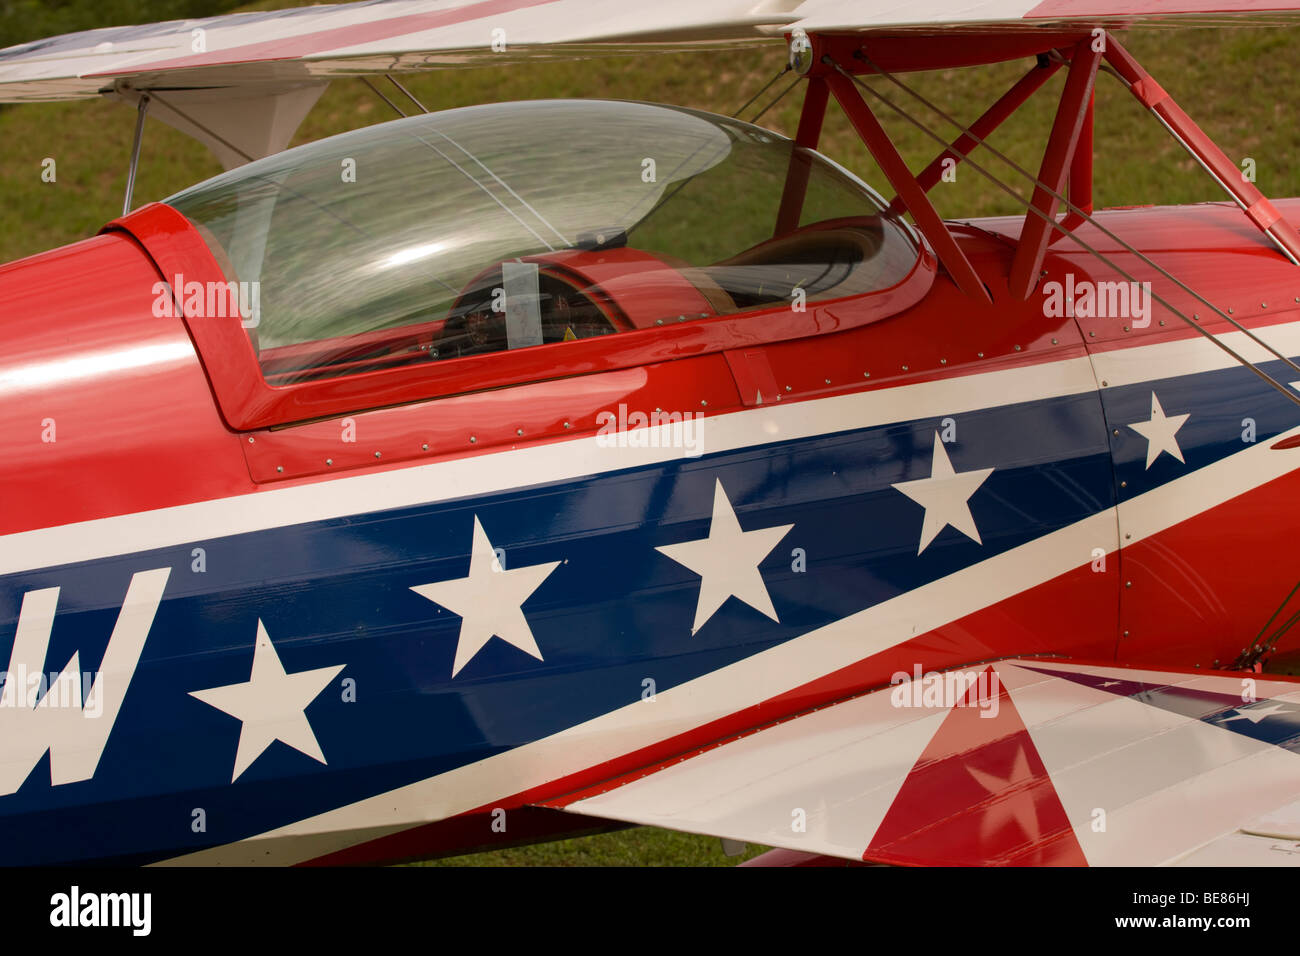 Dettaglio del velivolo acrobatico con i colori della bandiera americana. Foto Stock